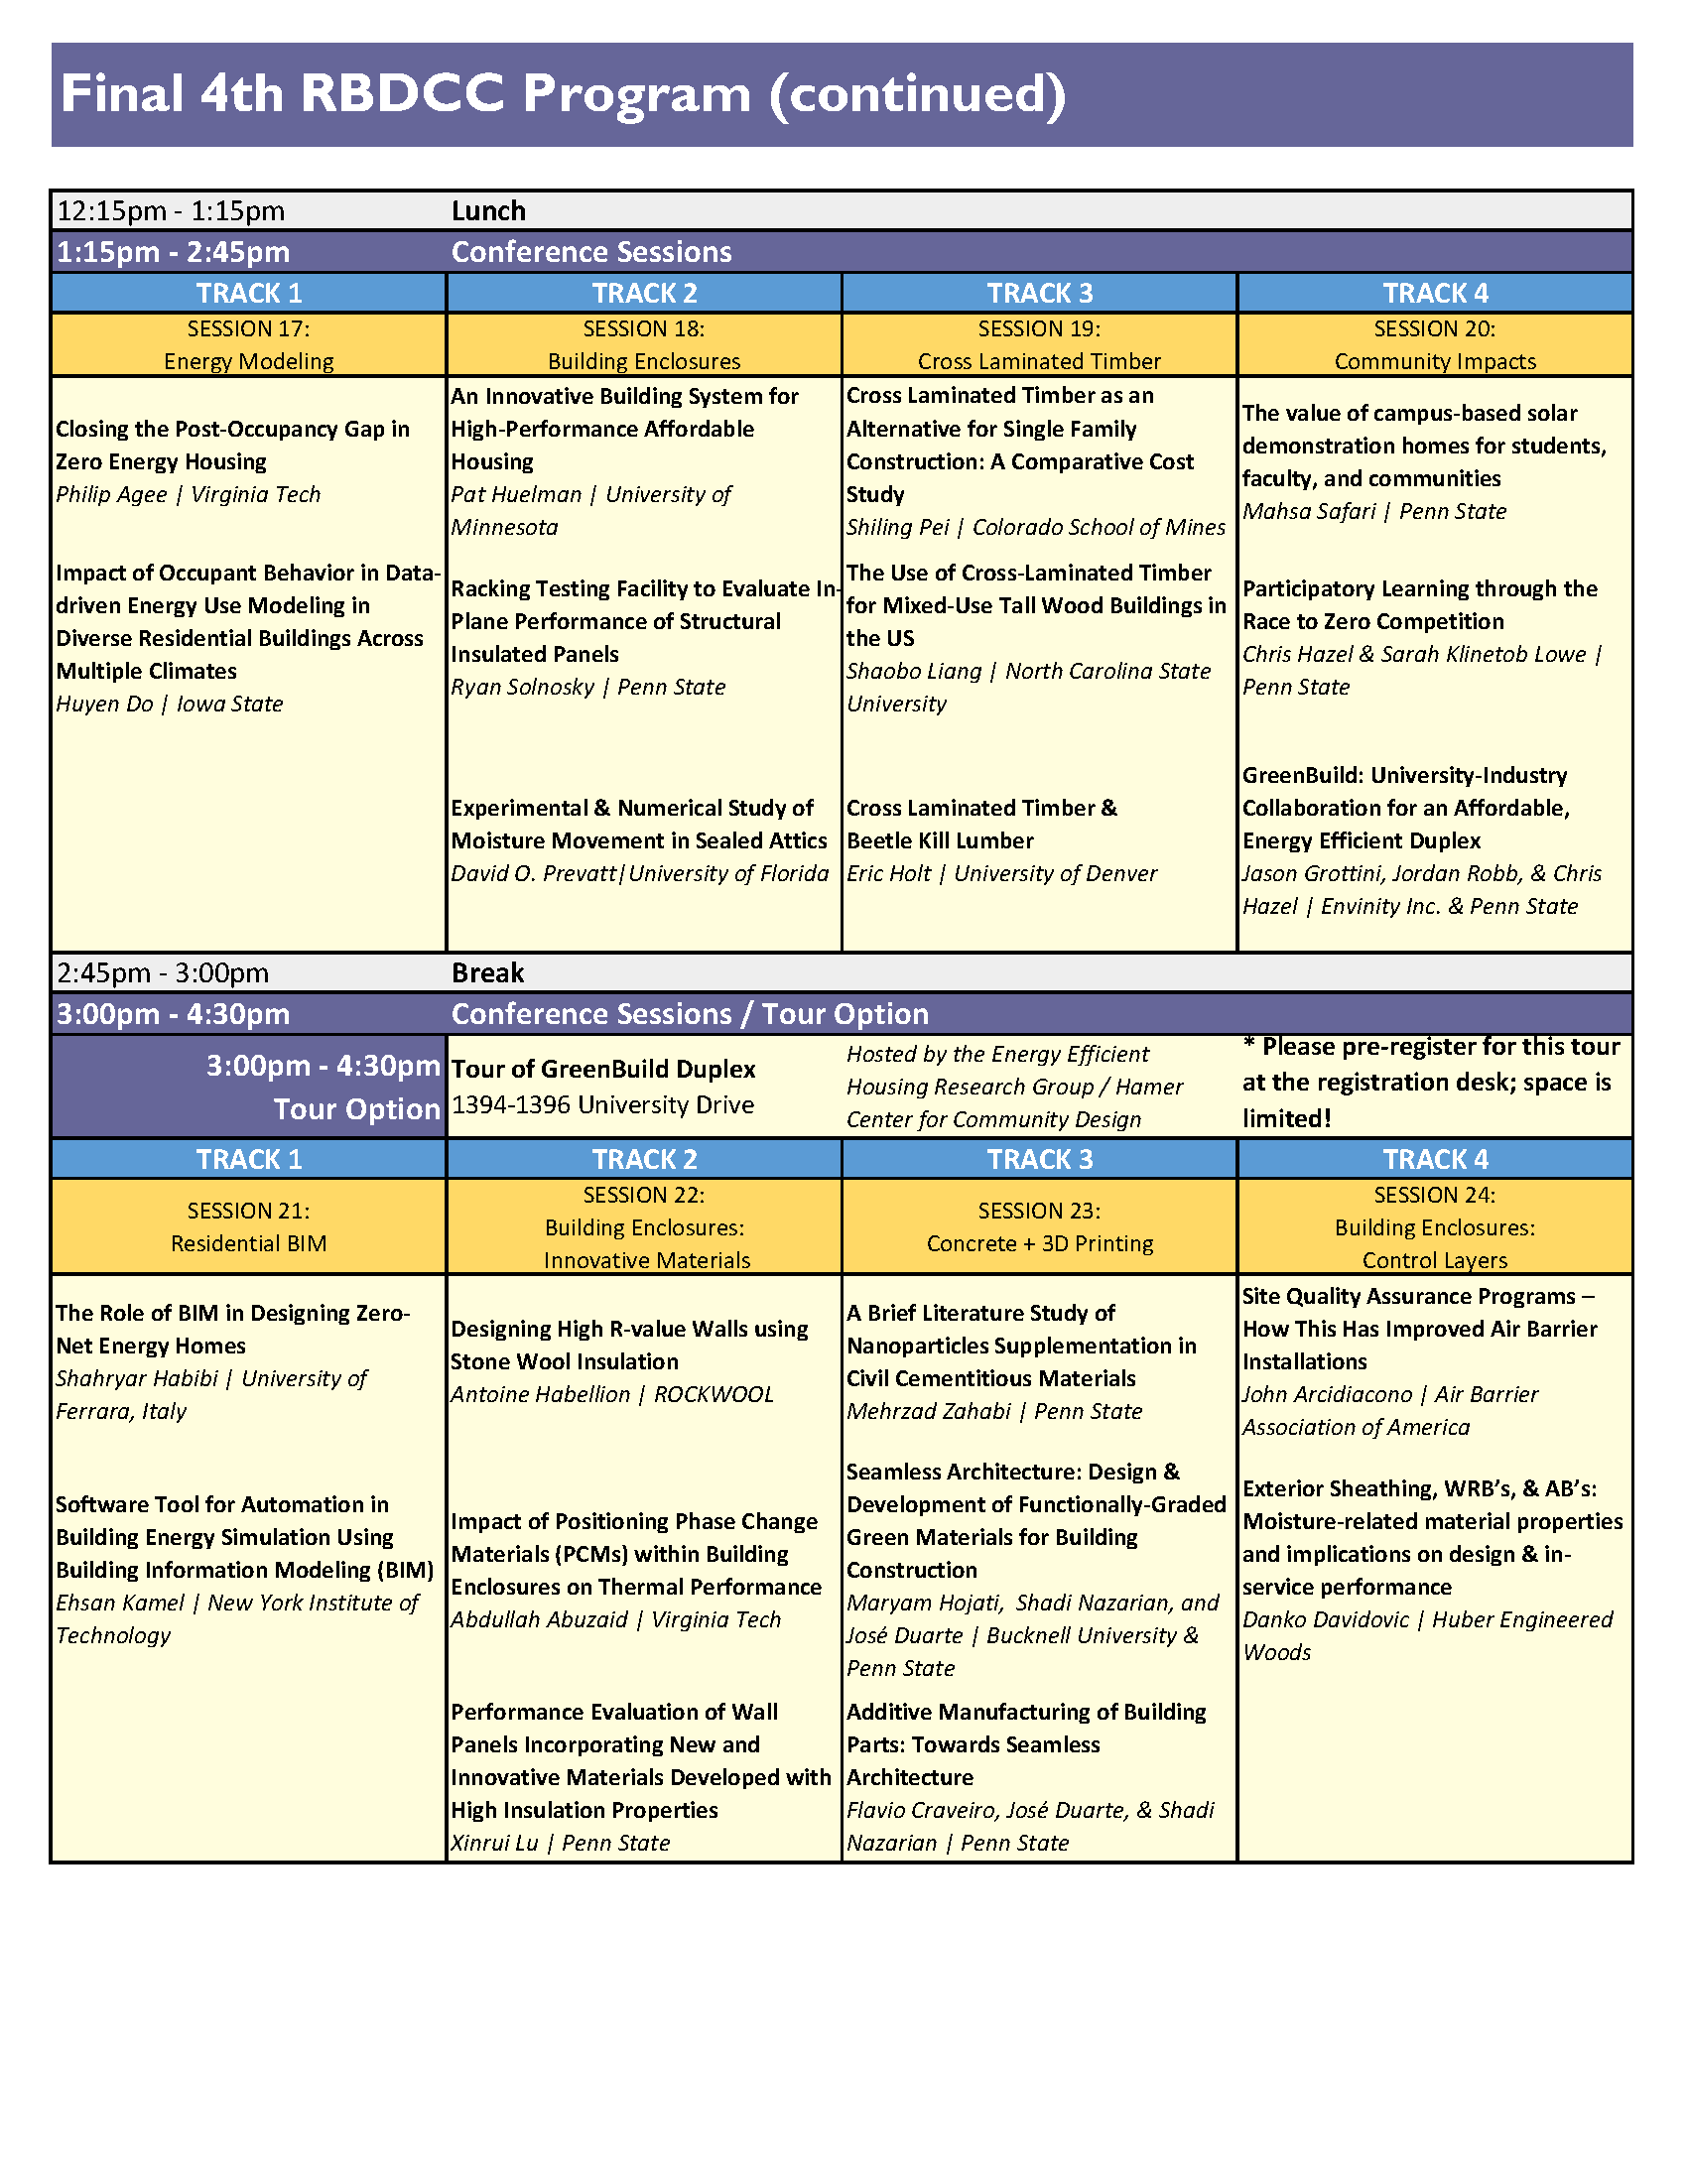 RBDCC Final Schedule Page 3